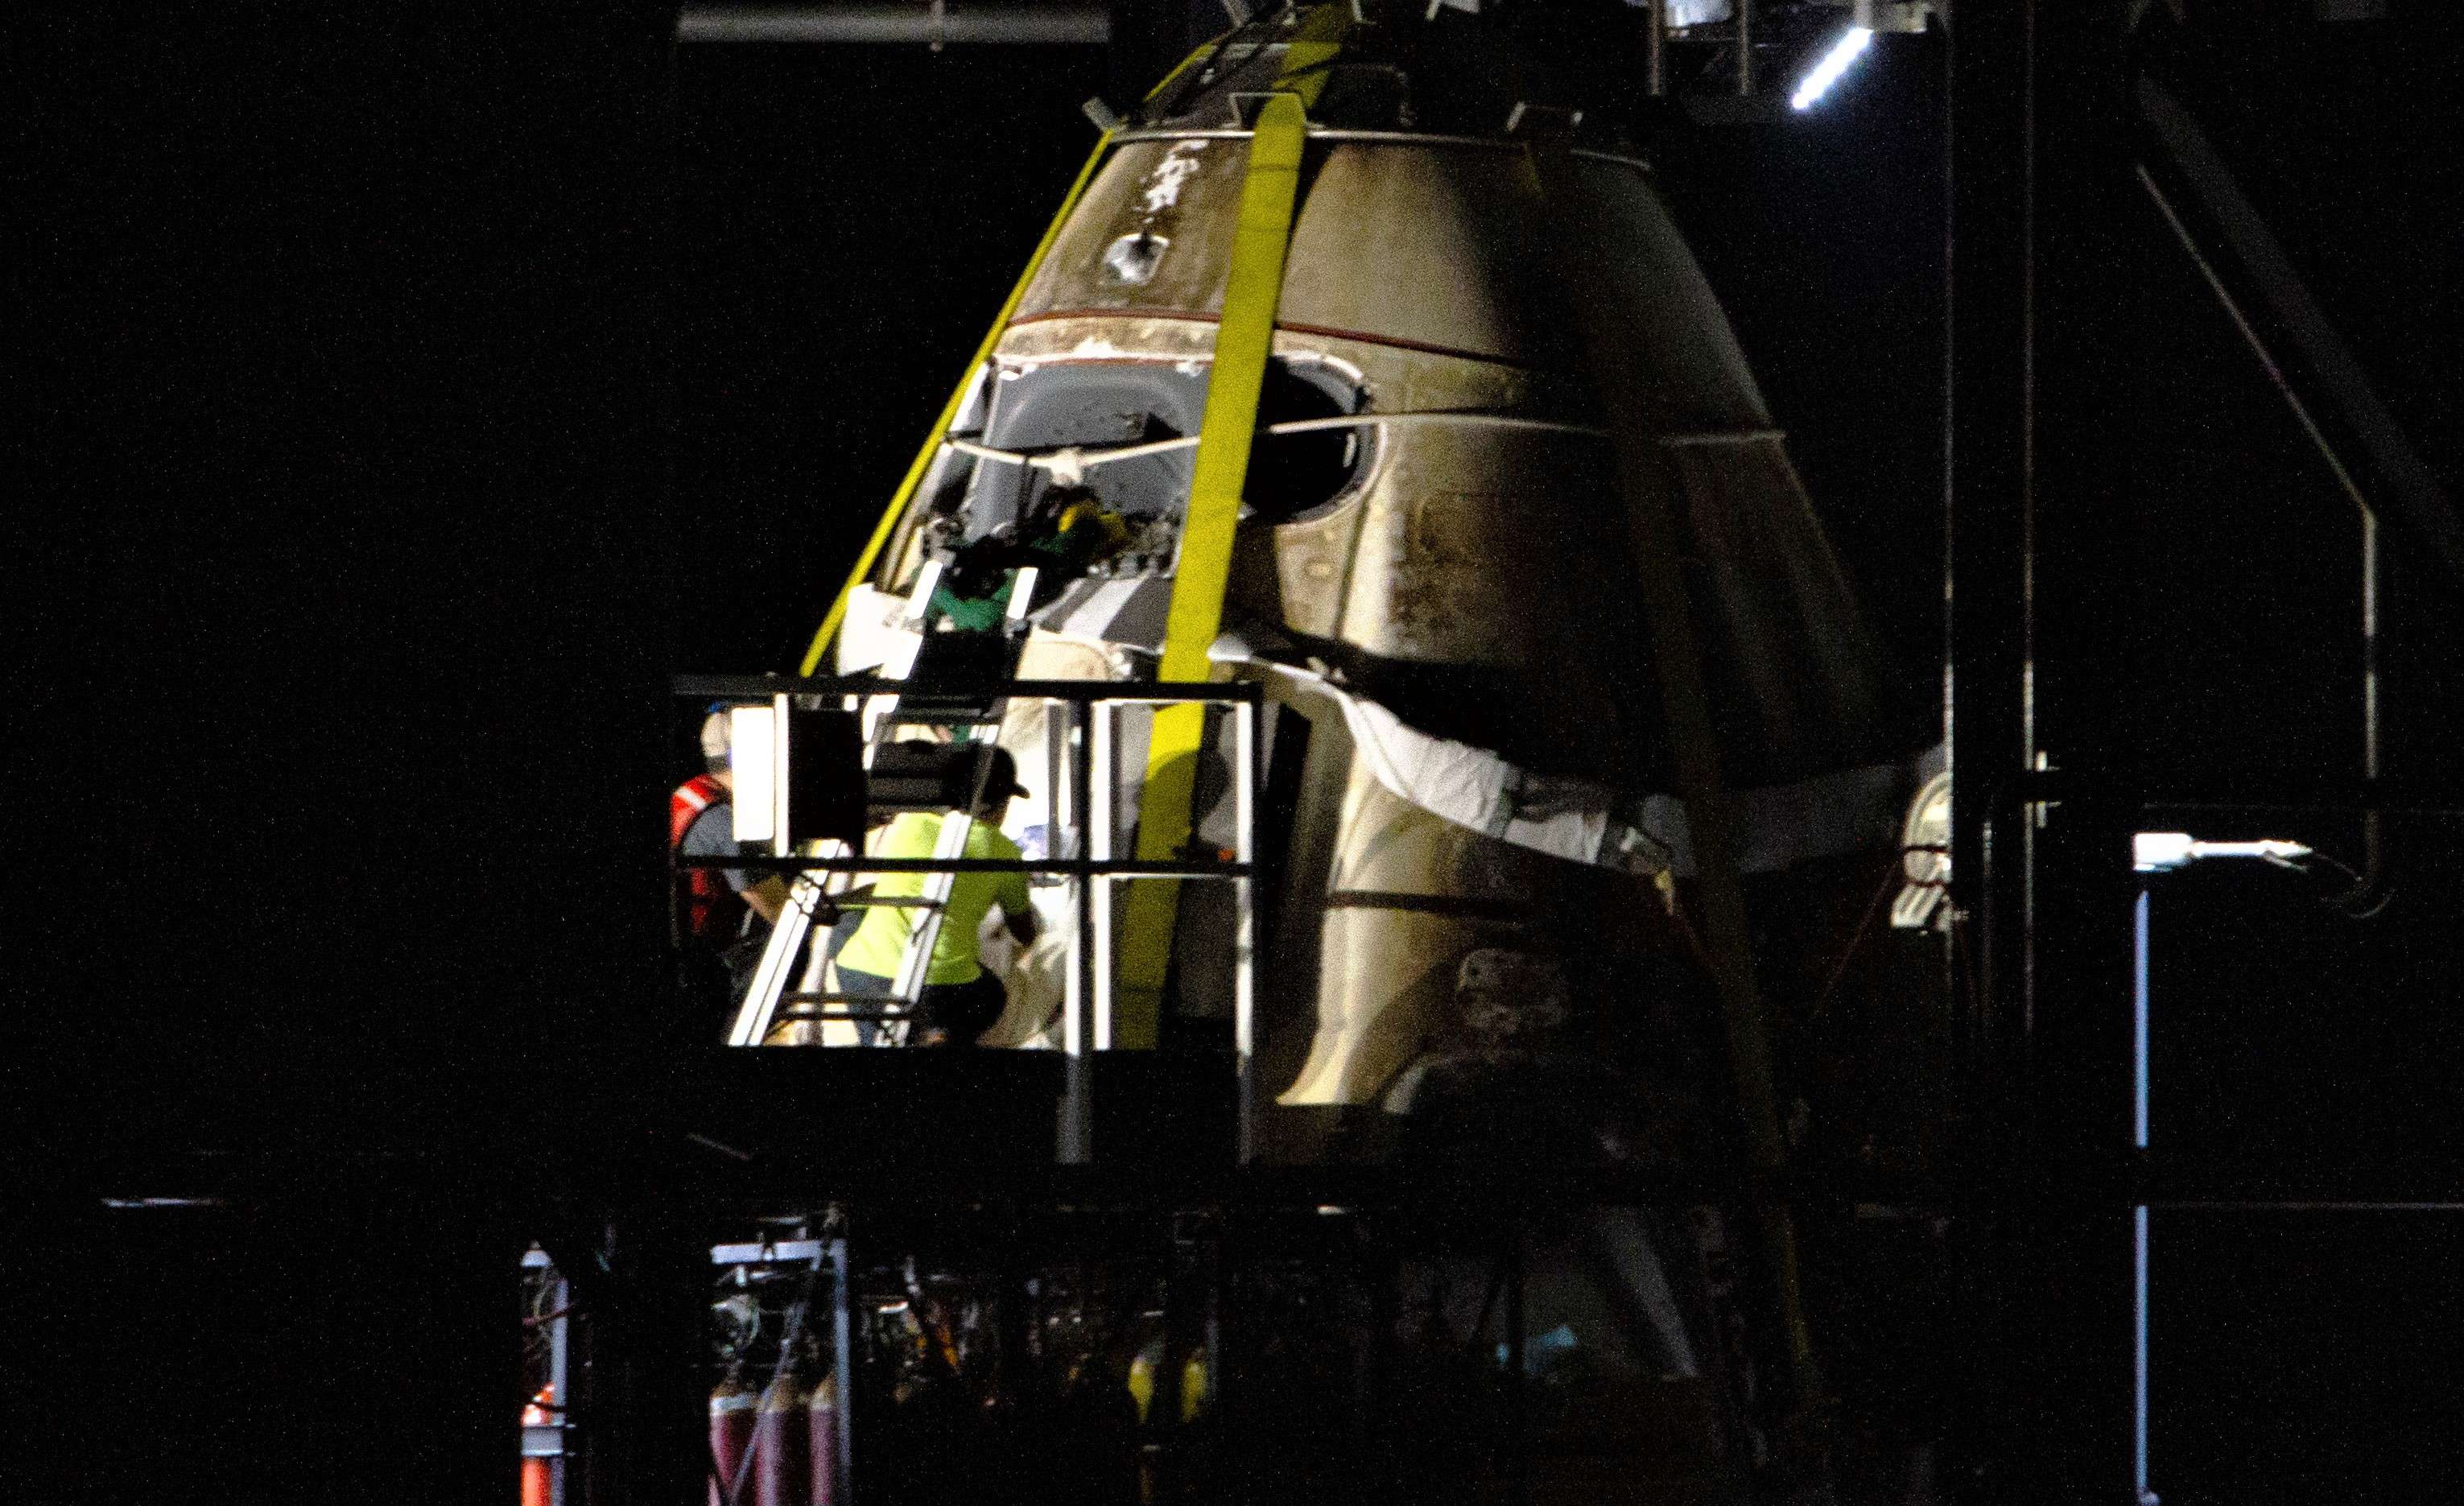 Crew Dragon DM-1 capsule port return 031019 (Tom Cross) detail 1 edit (c)